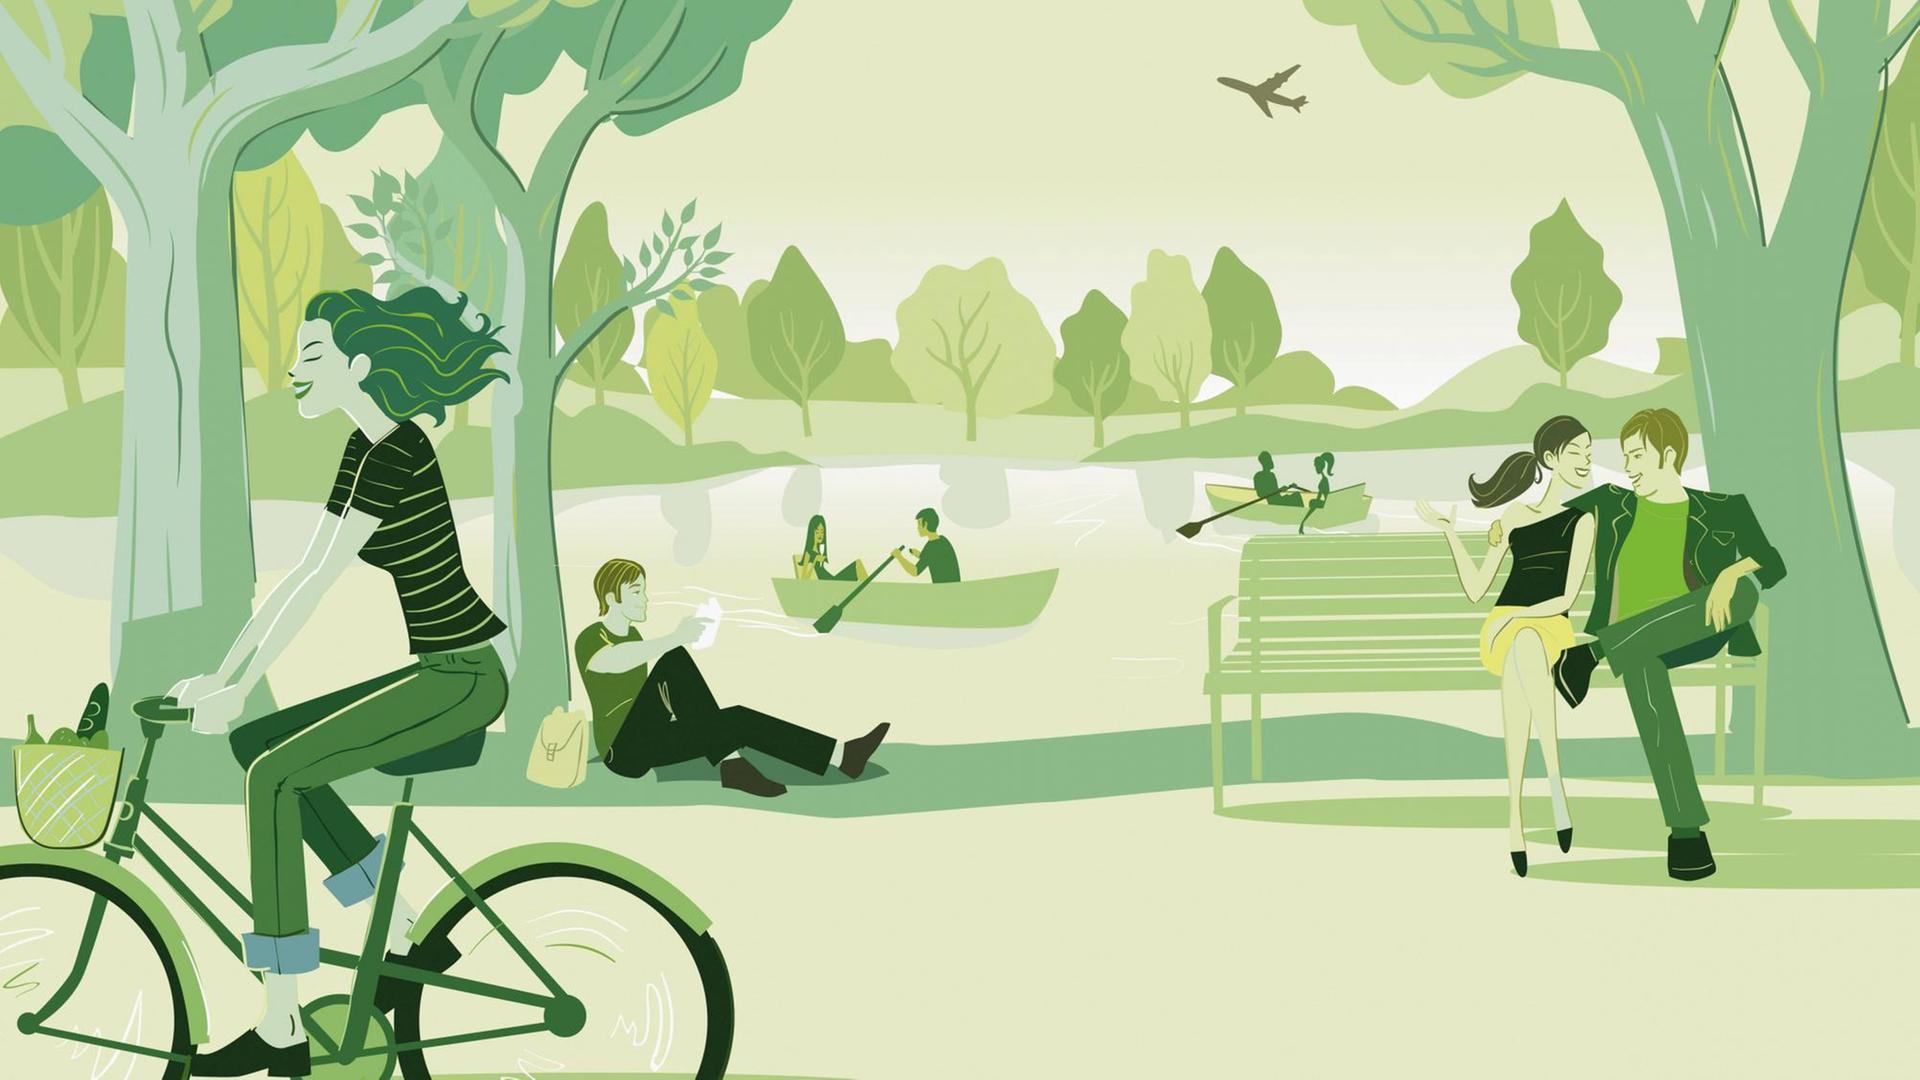 Menschen entspannen im Park. Illustration von Steve Scott.